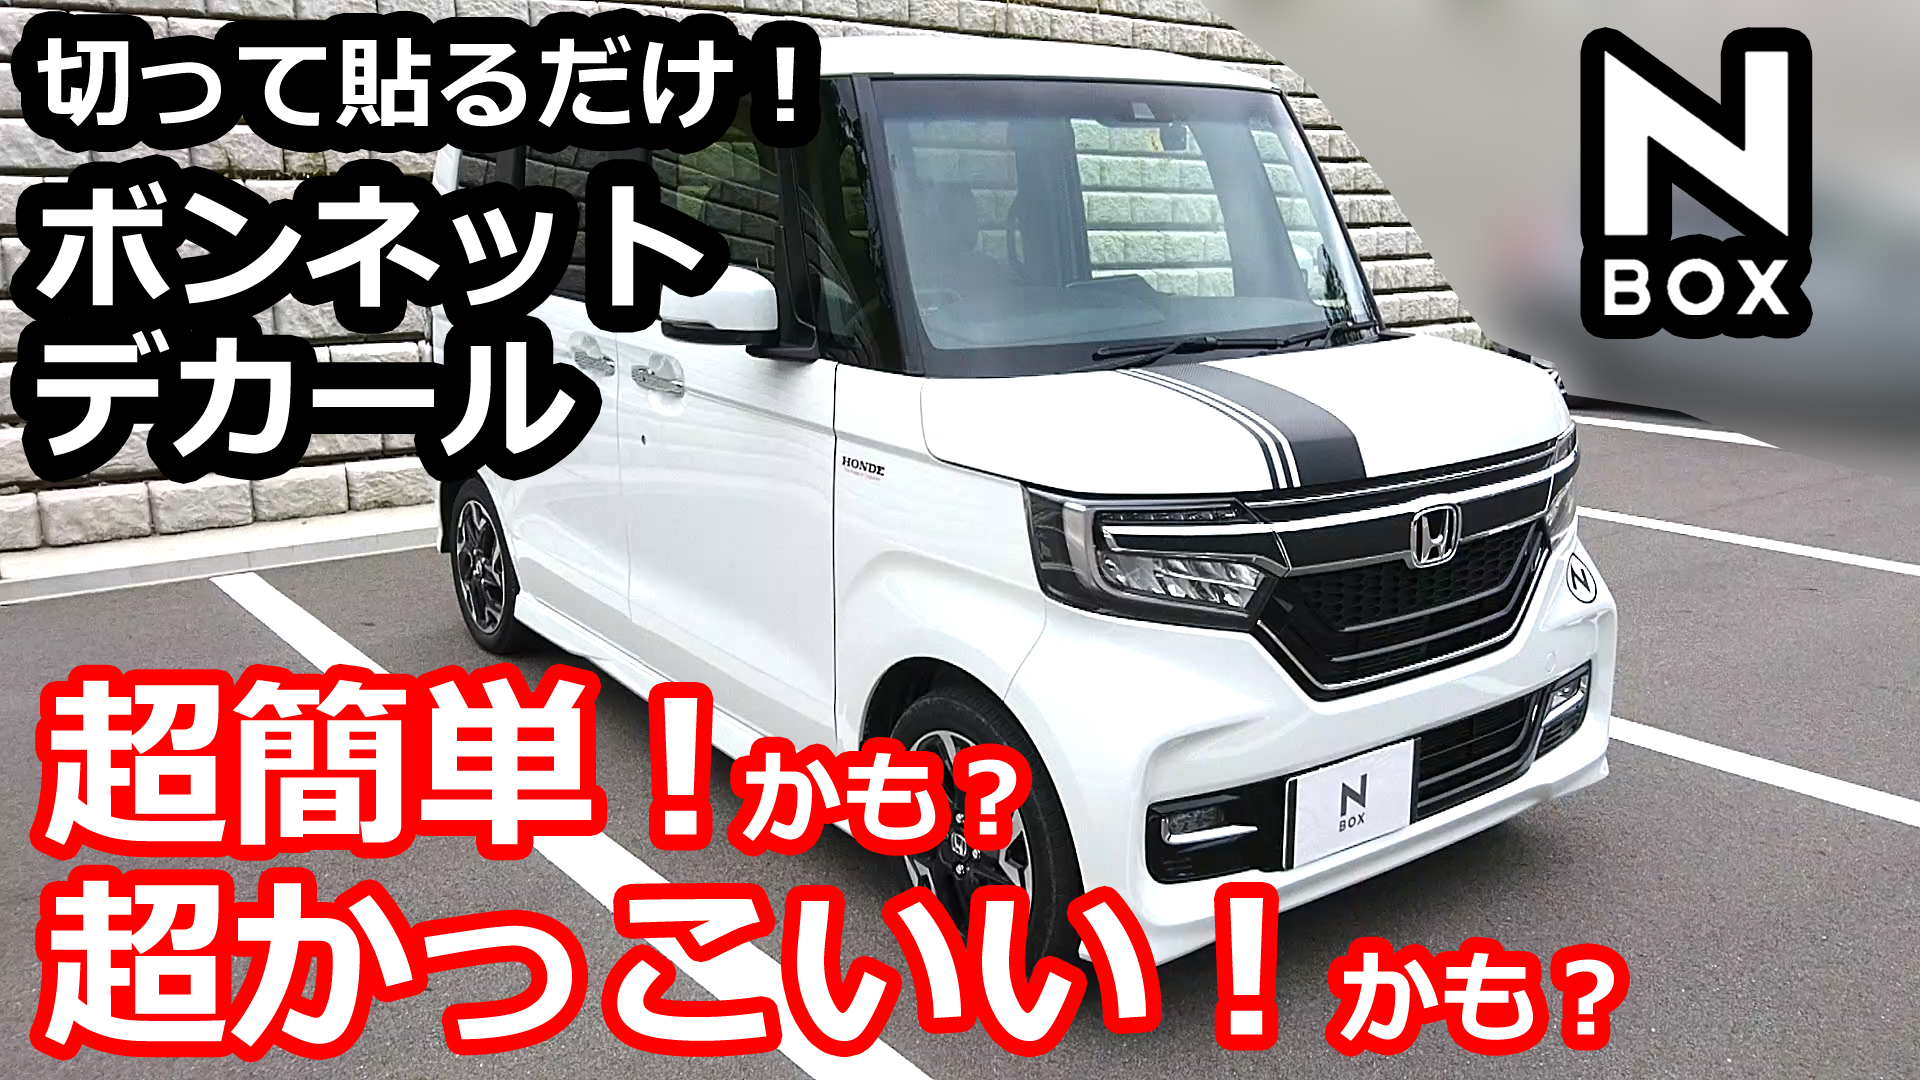 Honda N Box 切って貼るだけ超簡単 超かっこいい 自作 ボンネット デカール Momotaro Blog